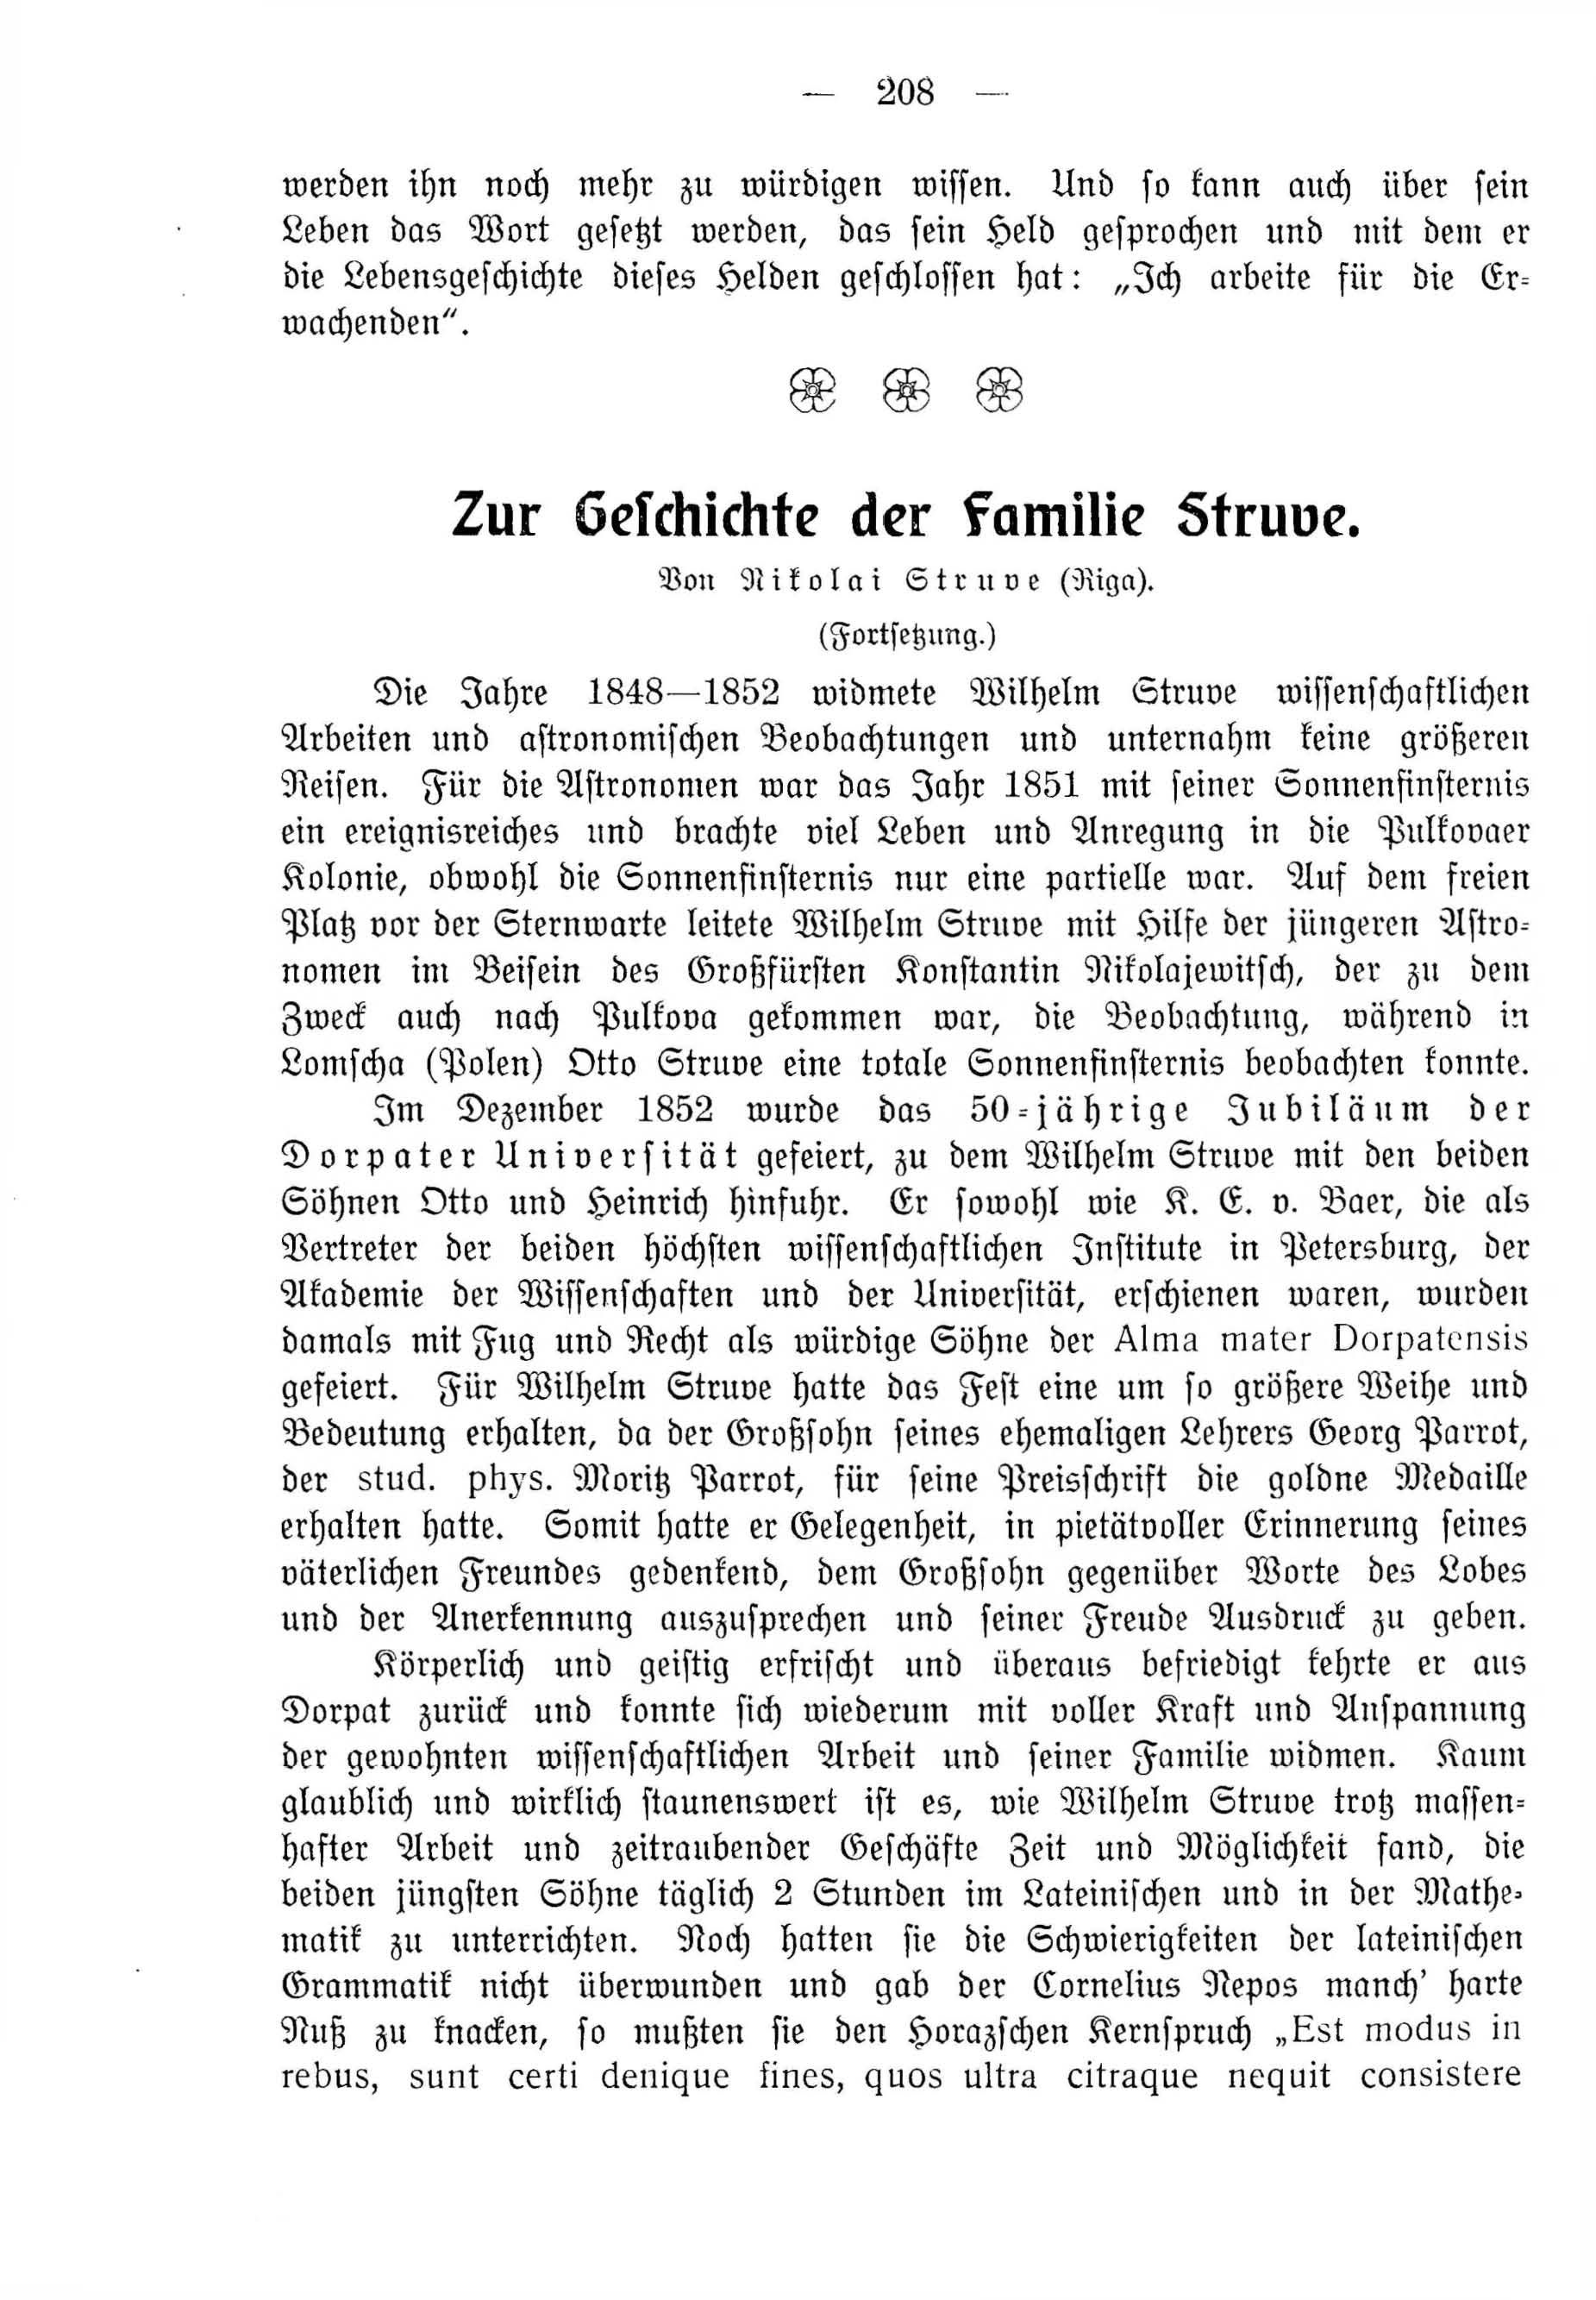 Deutsche Monatsschrift für Russland (1912 – 1915) | 3494. (208) Main body of text